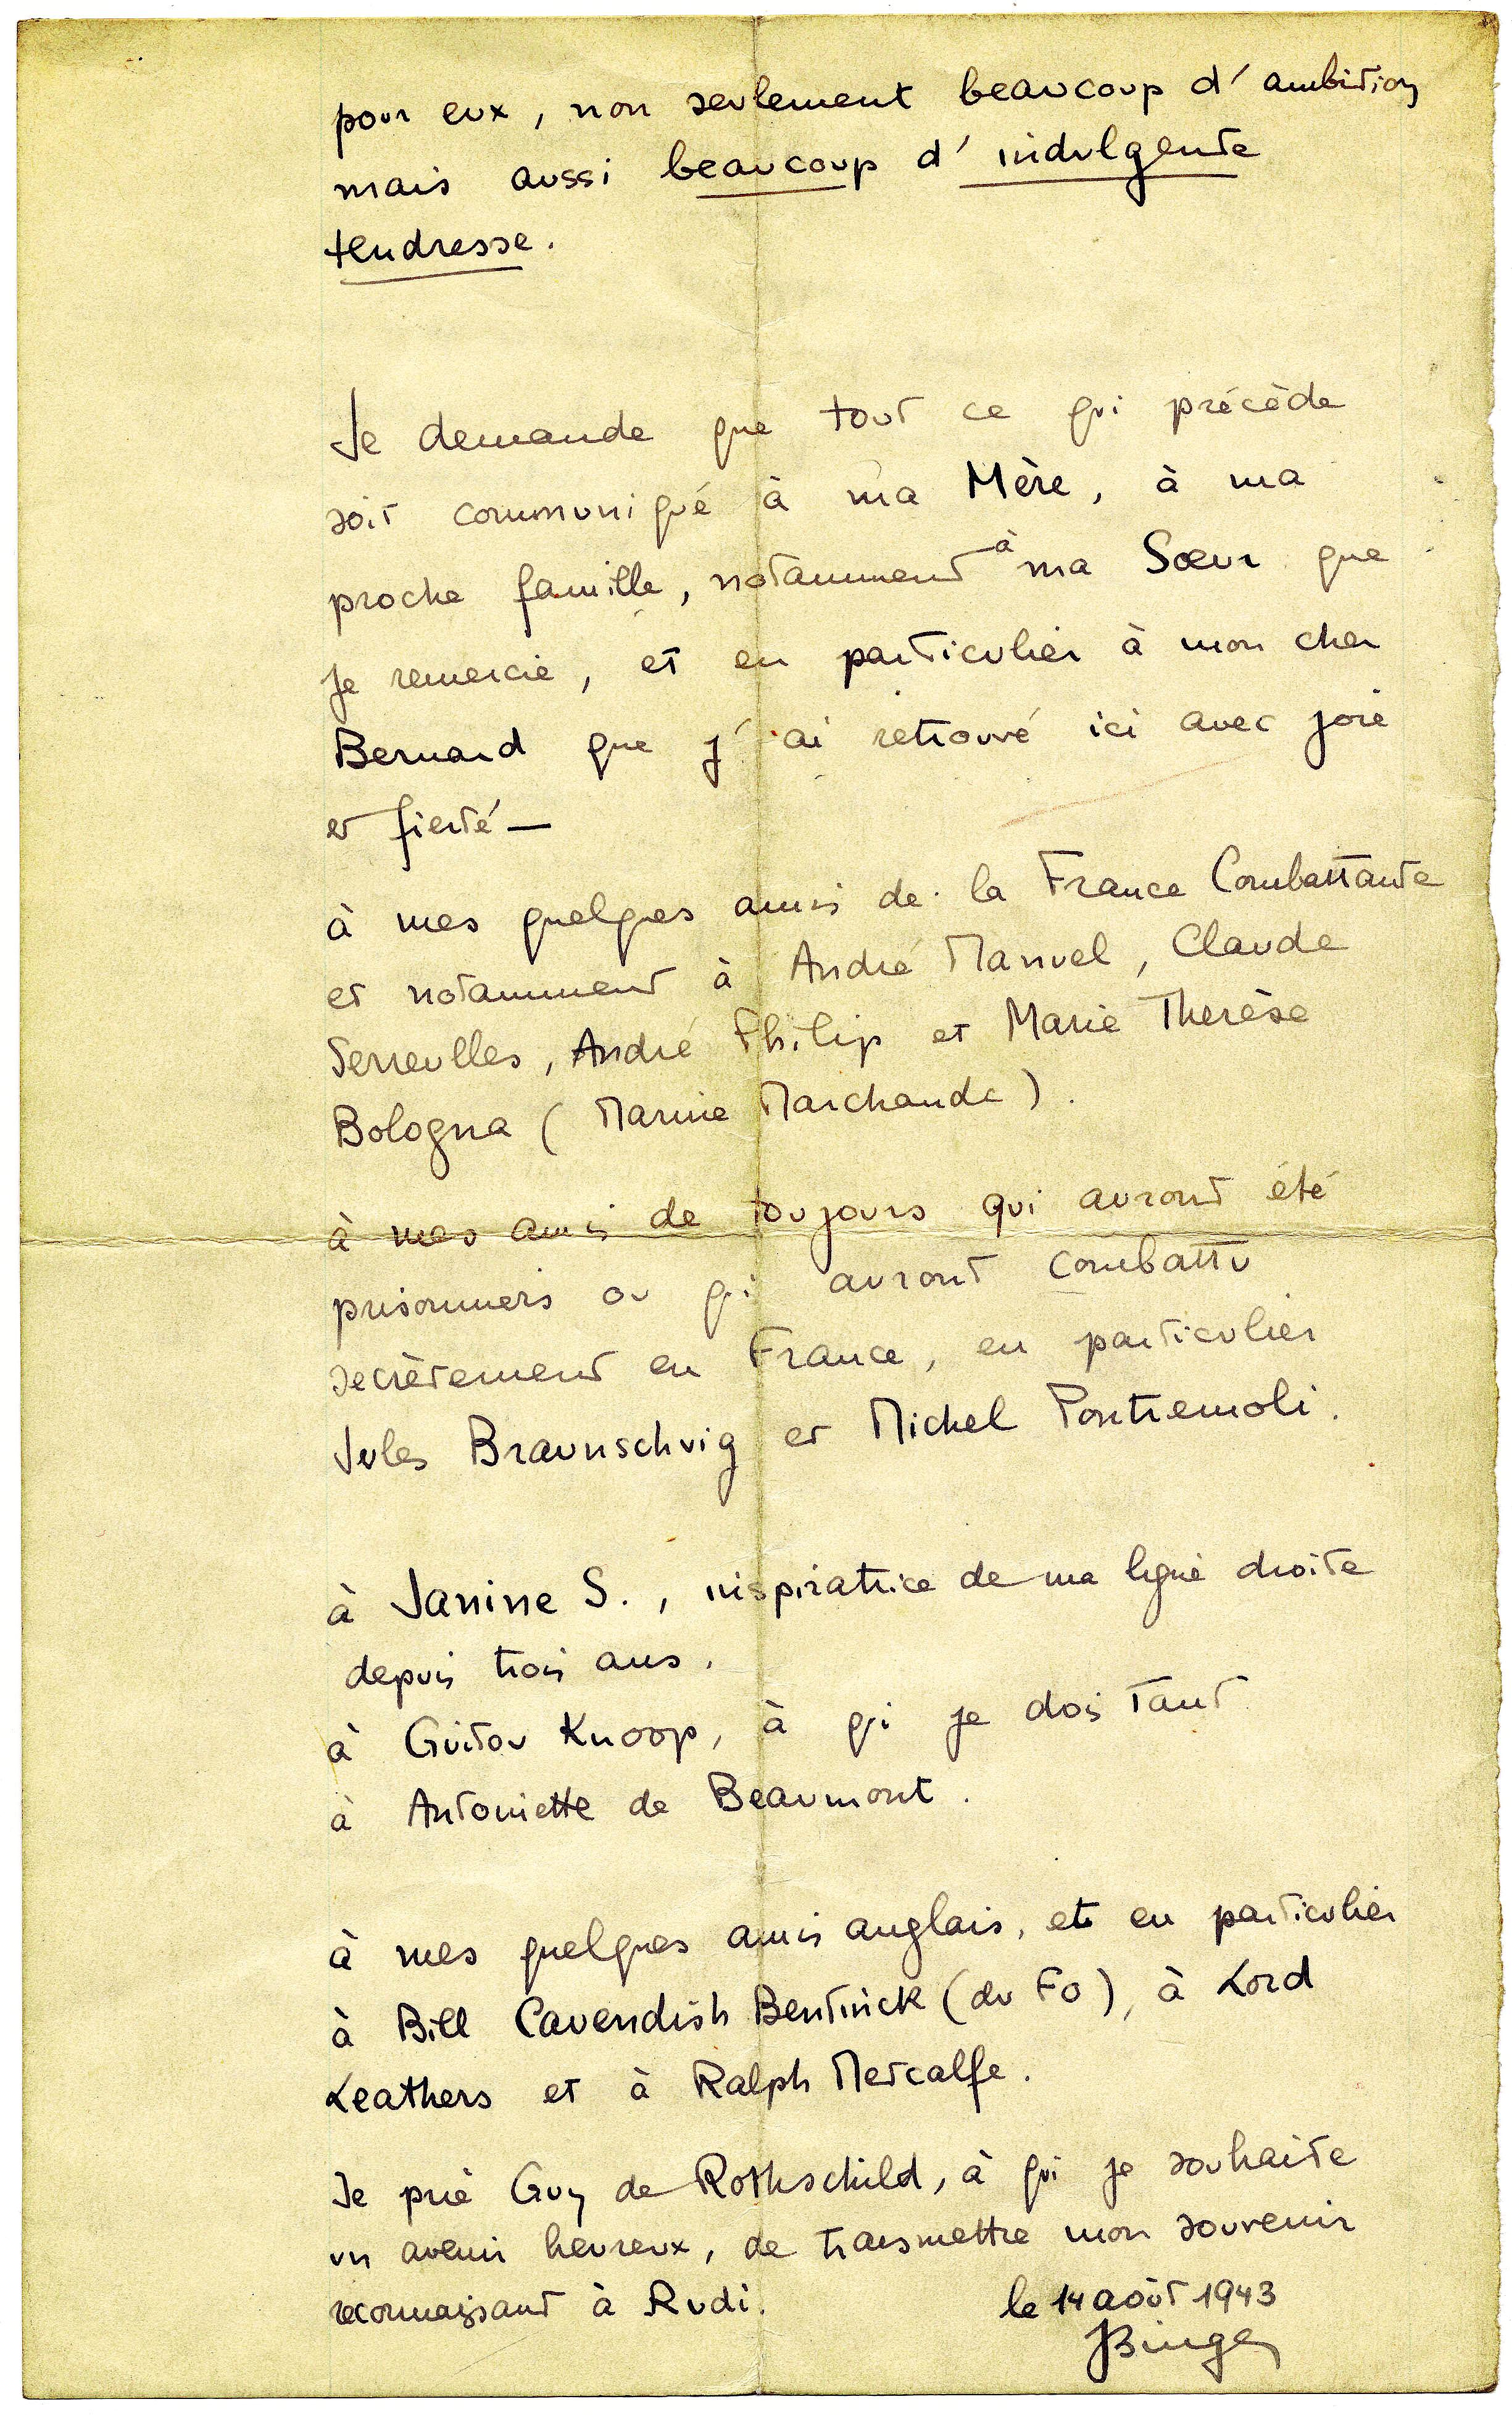 « Lettre à mes amis » écrite par Jacques Bingen le 14 août 1943.